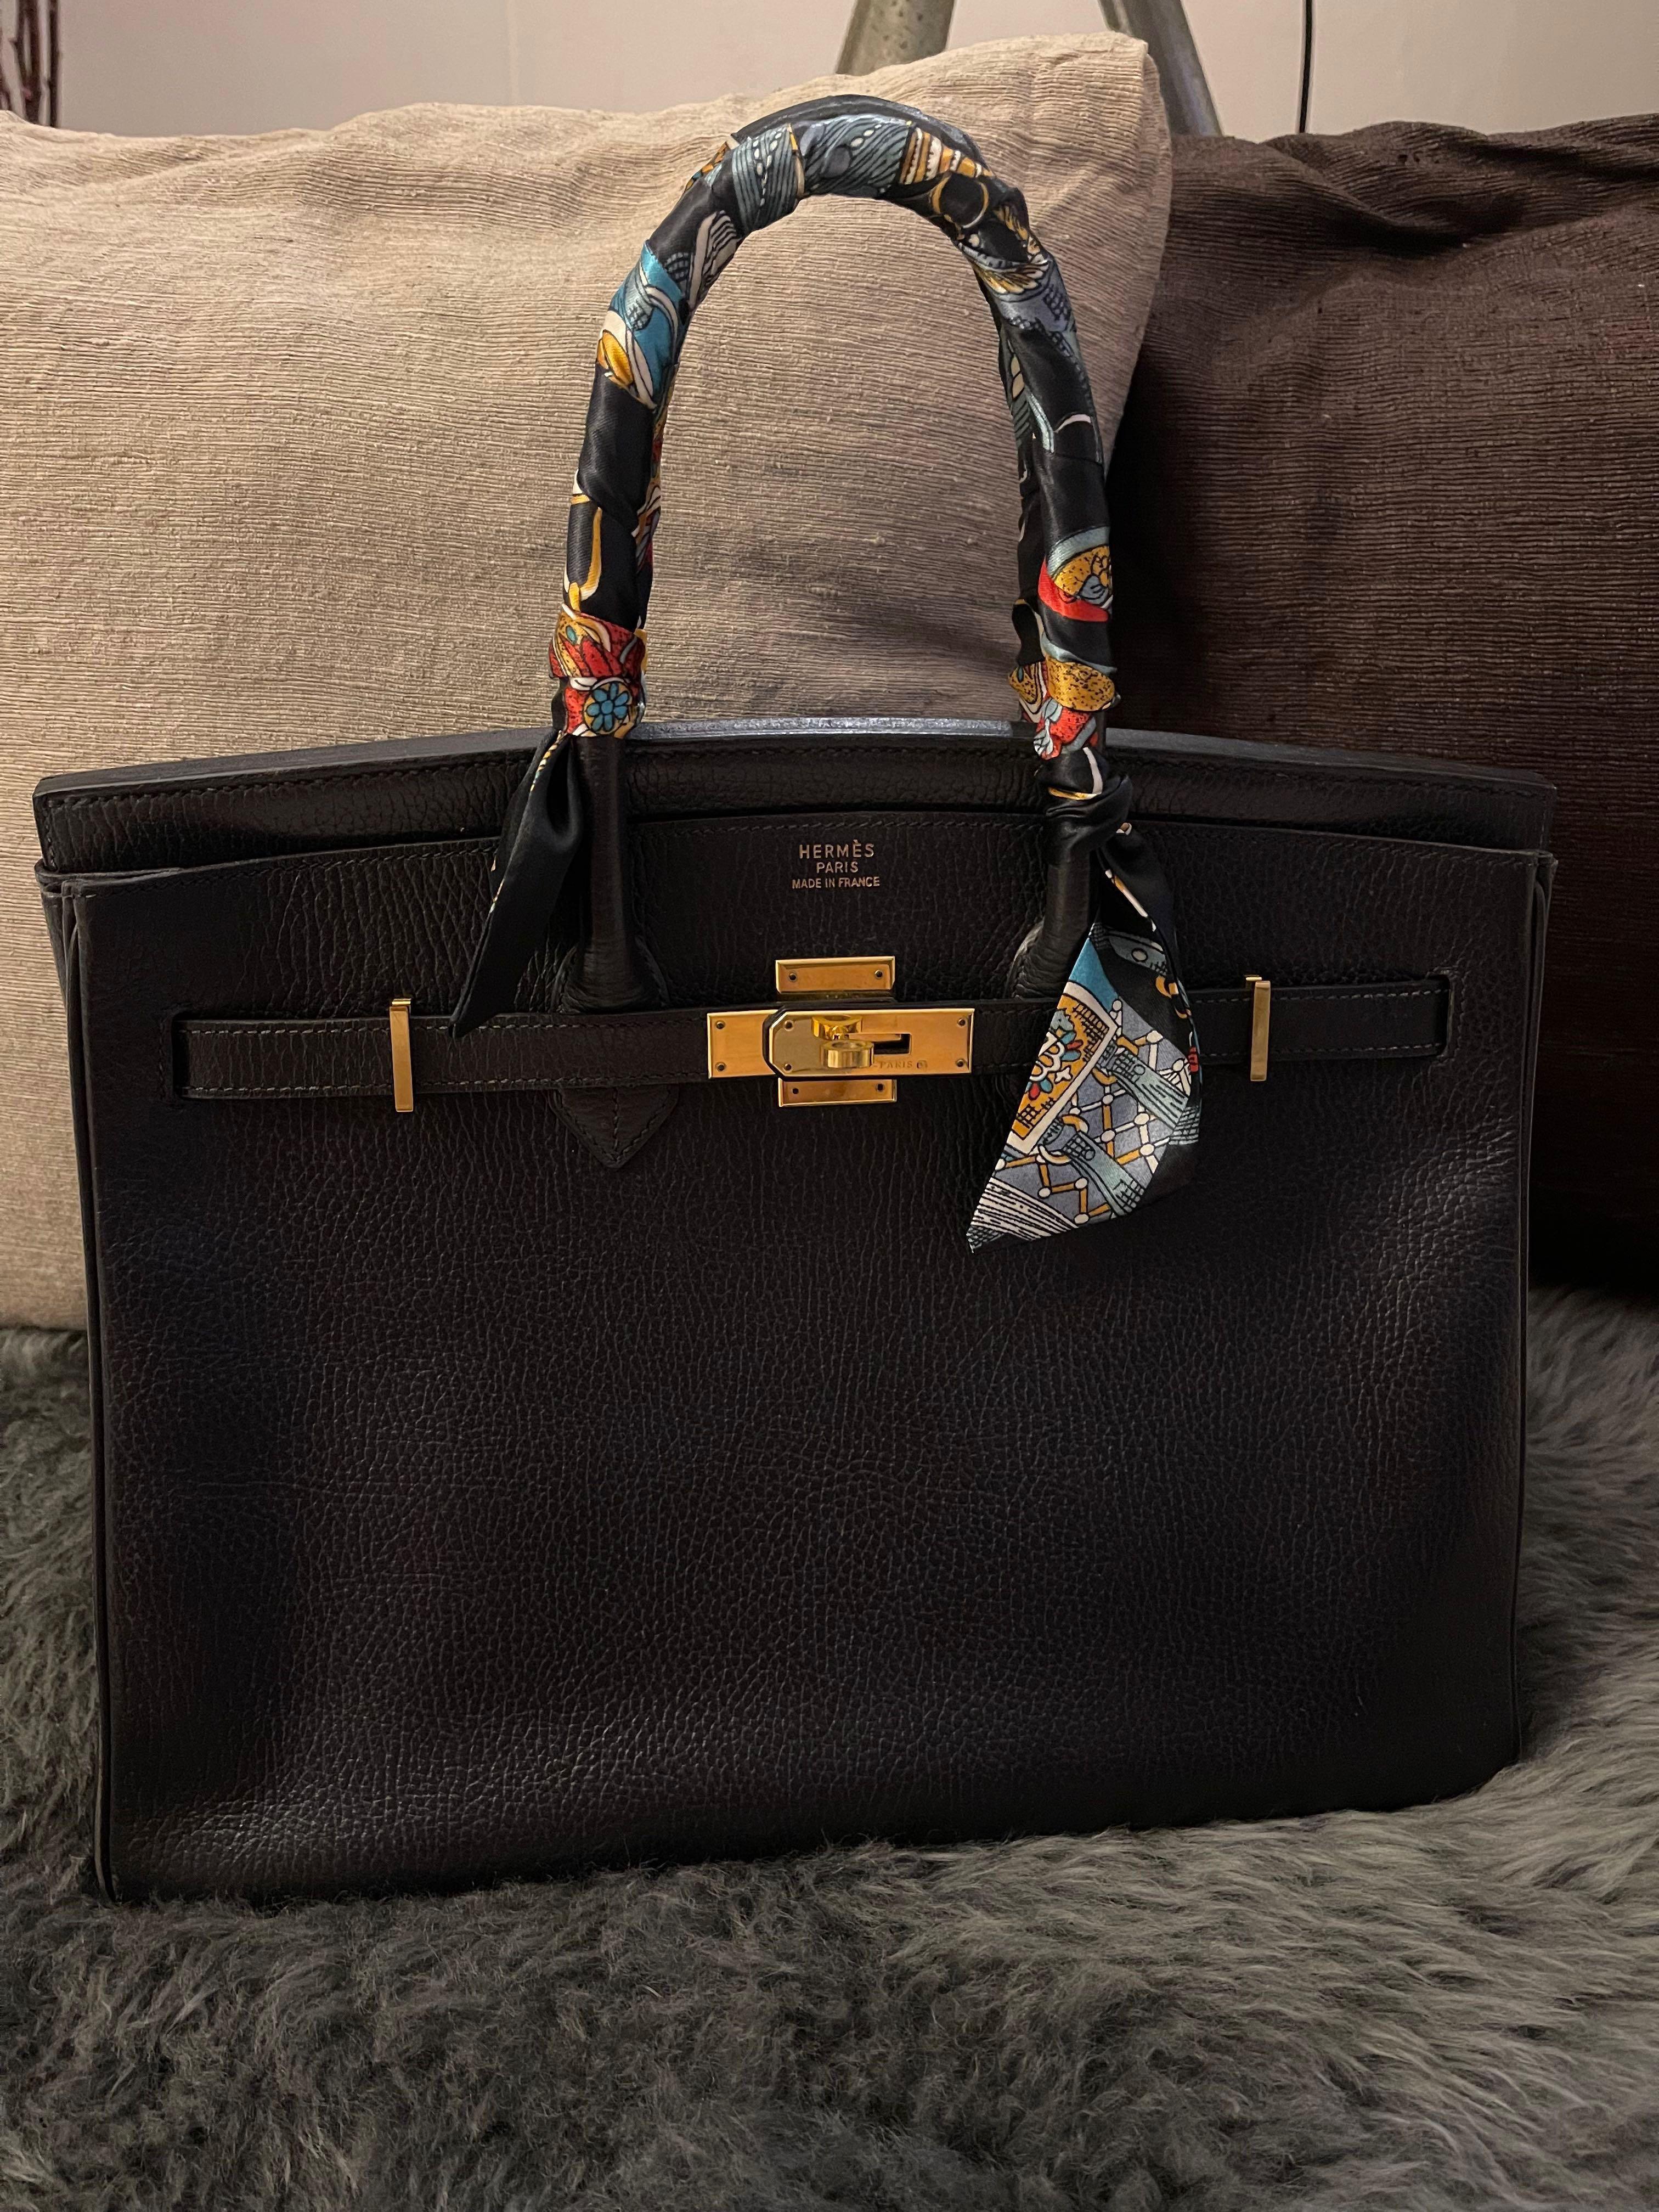 Hermes, Bags, Authentic Hermes Birkin 35 Cm Mint Condition Box Dustbag  Raincoat Etc Incl